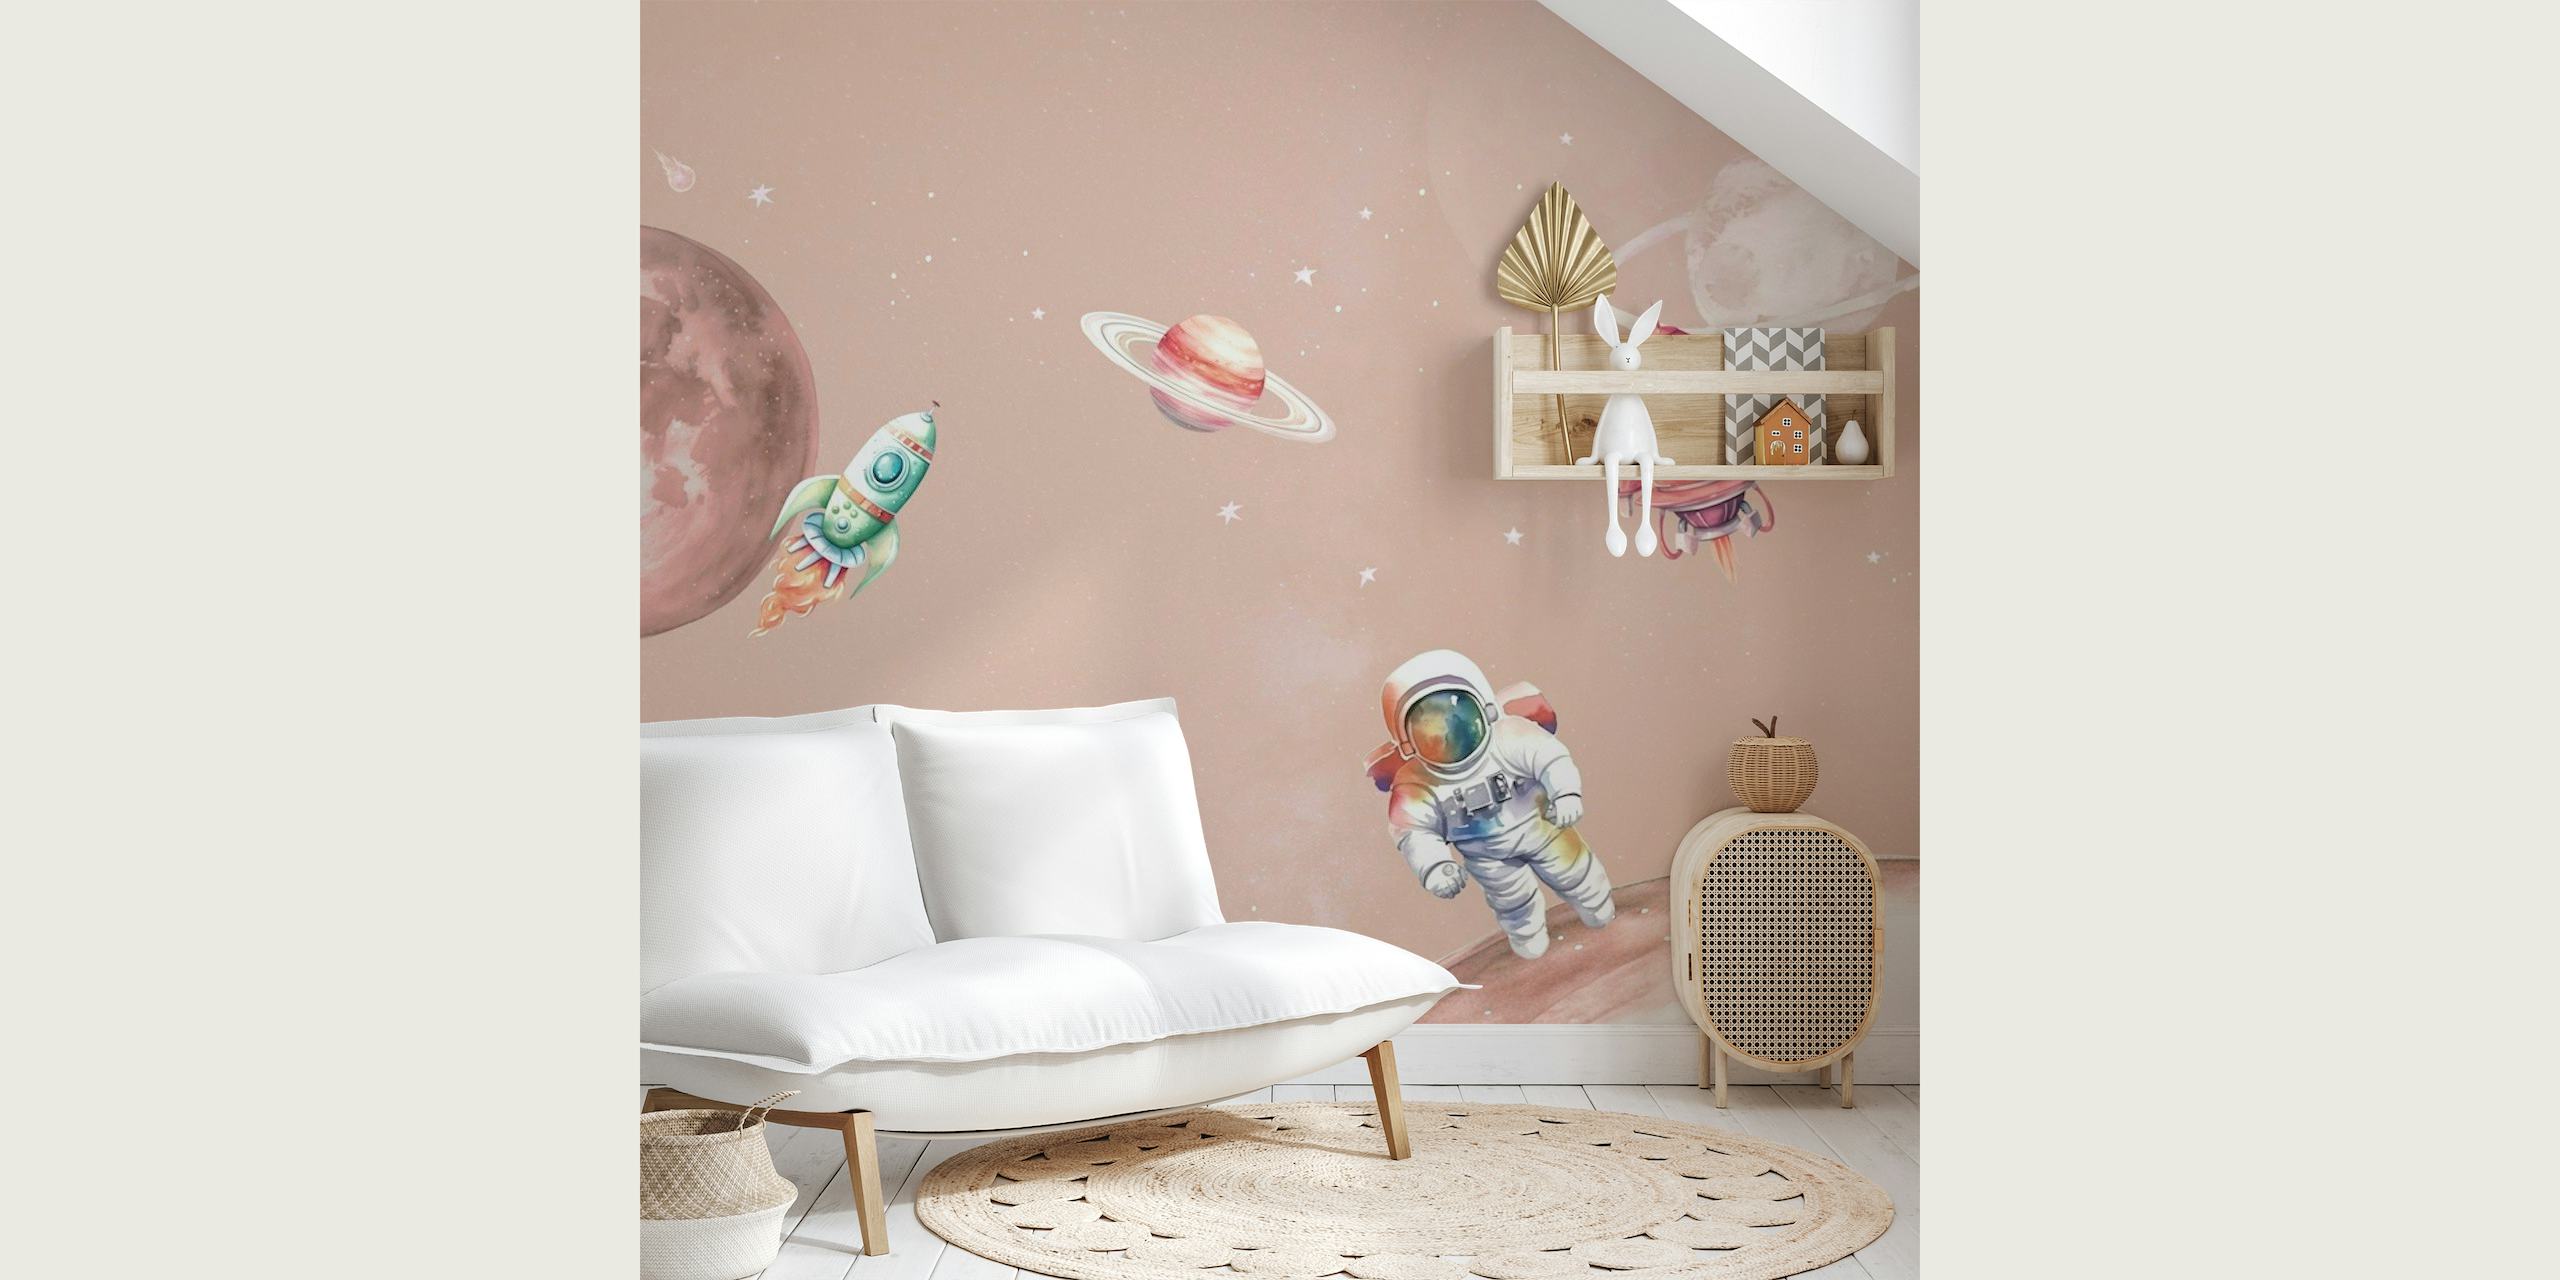 Tegneserie-stil rumscene-vægmaleri med en astronaut, planeter og rumskibe på en rødlig pink baggrund.